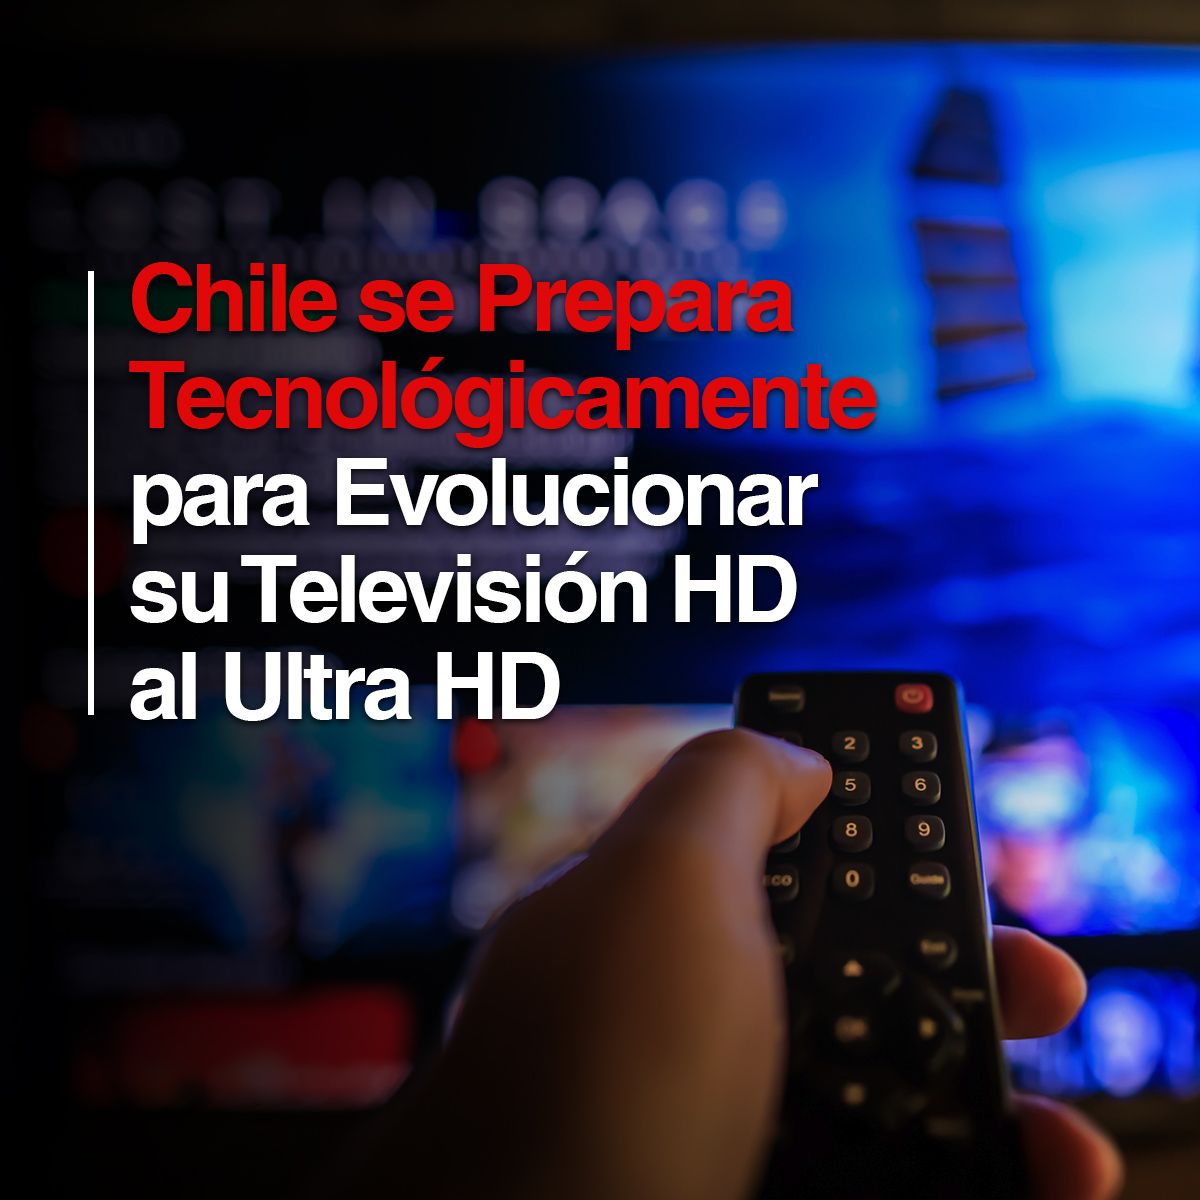 Chile se Prepara Tecnológicamente para Evolucionar su Televisión HD al Ultra HD